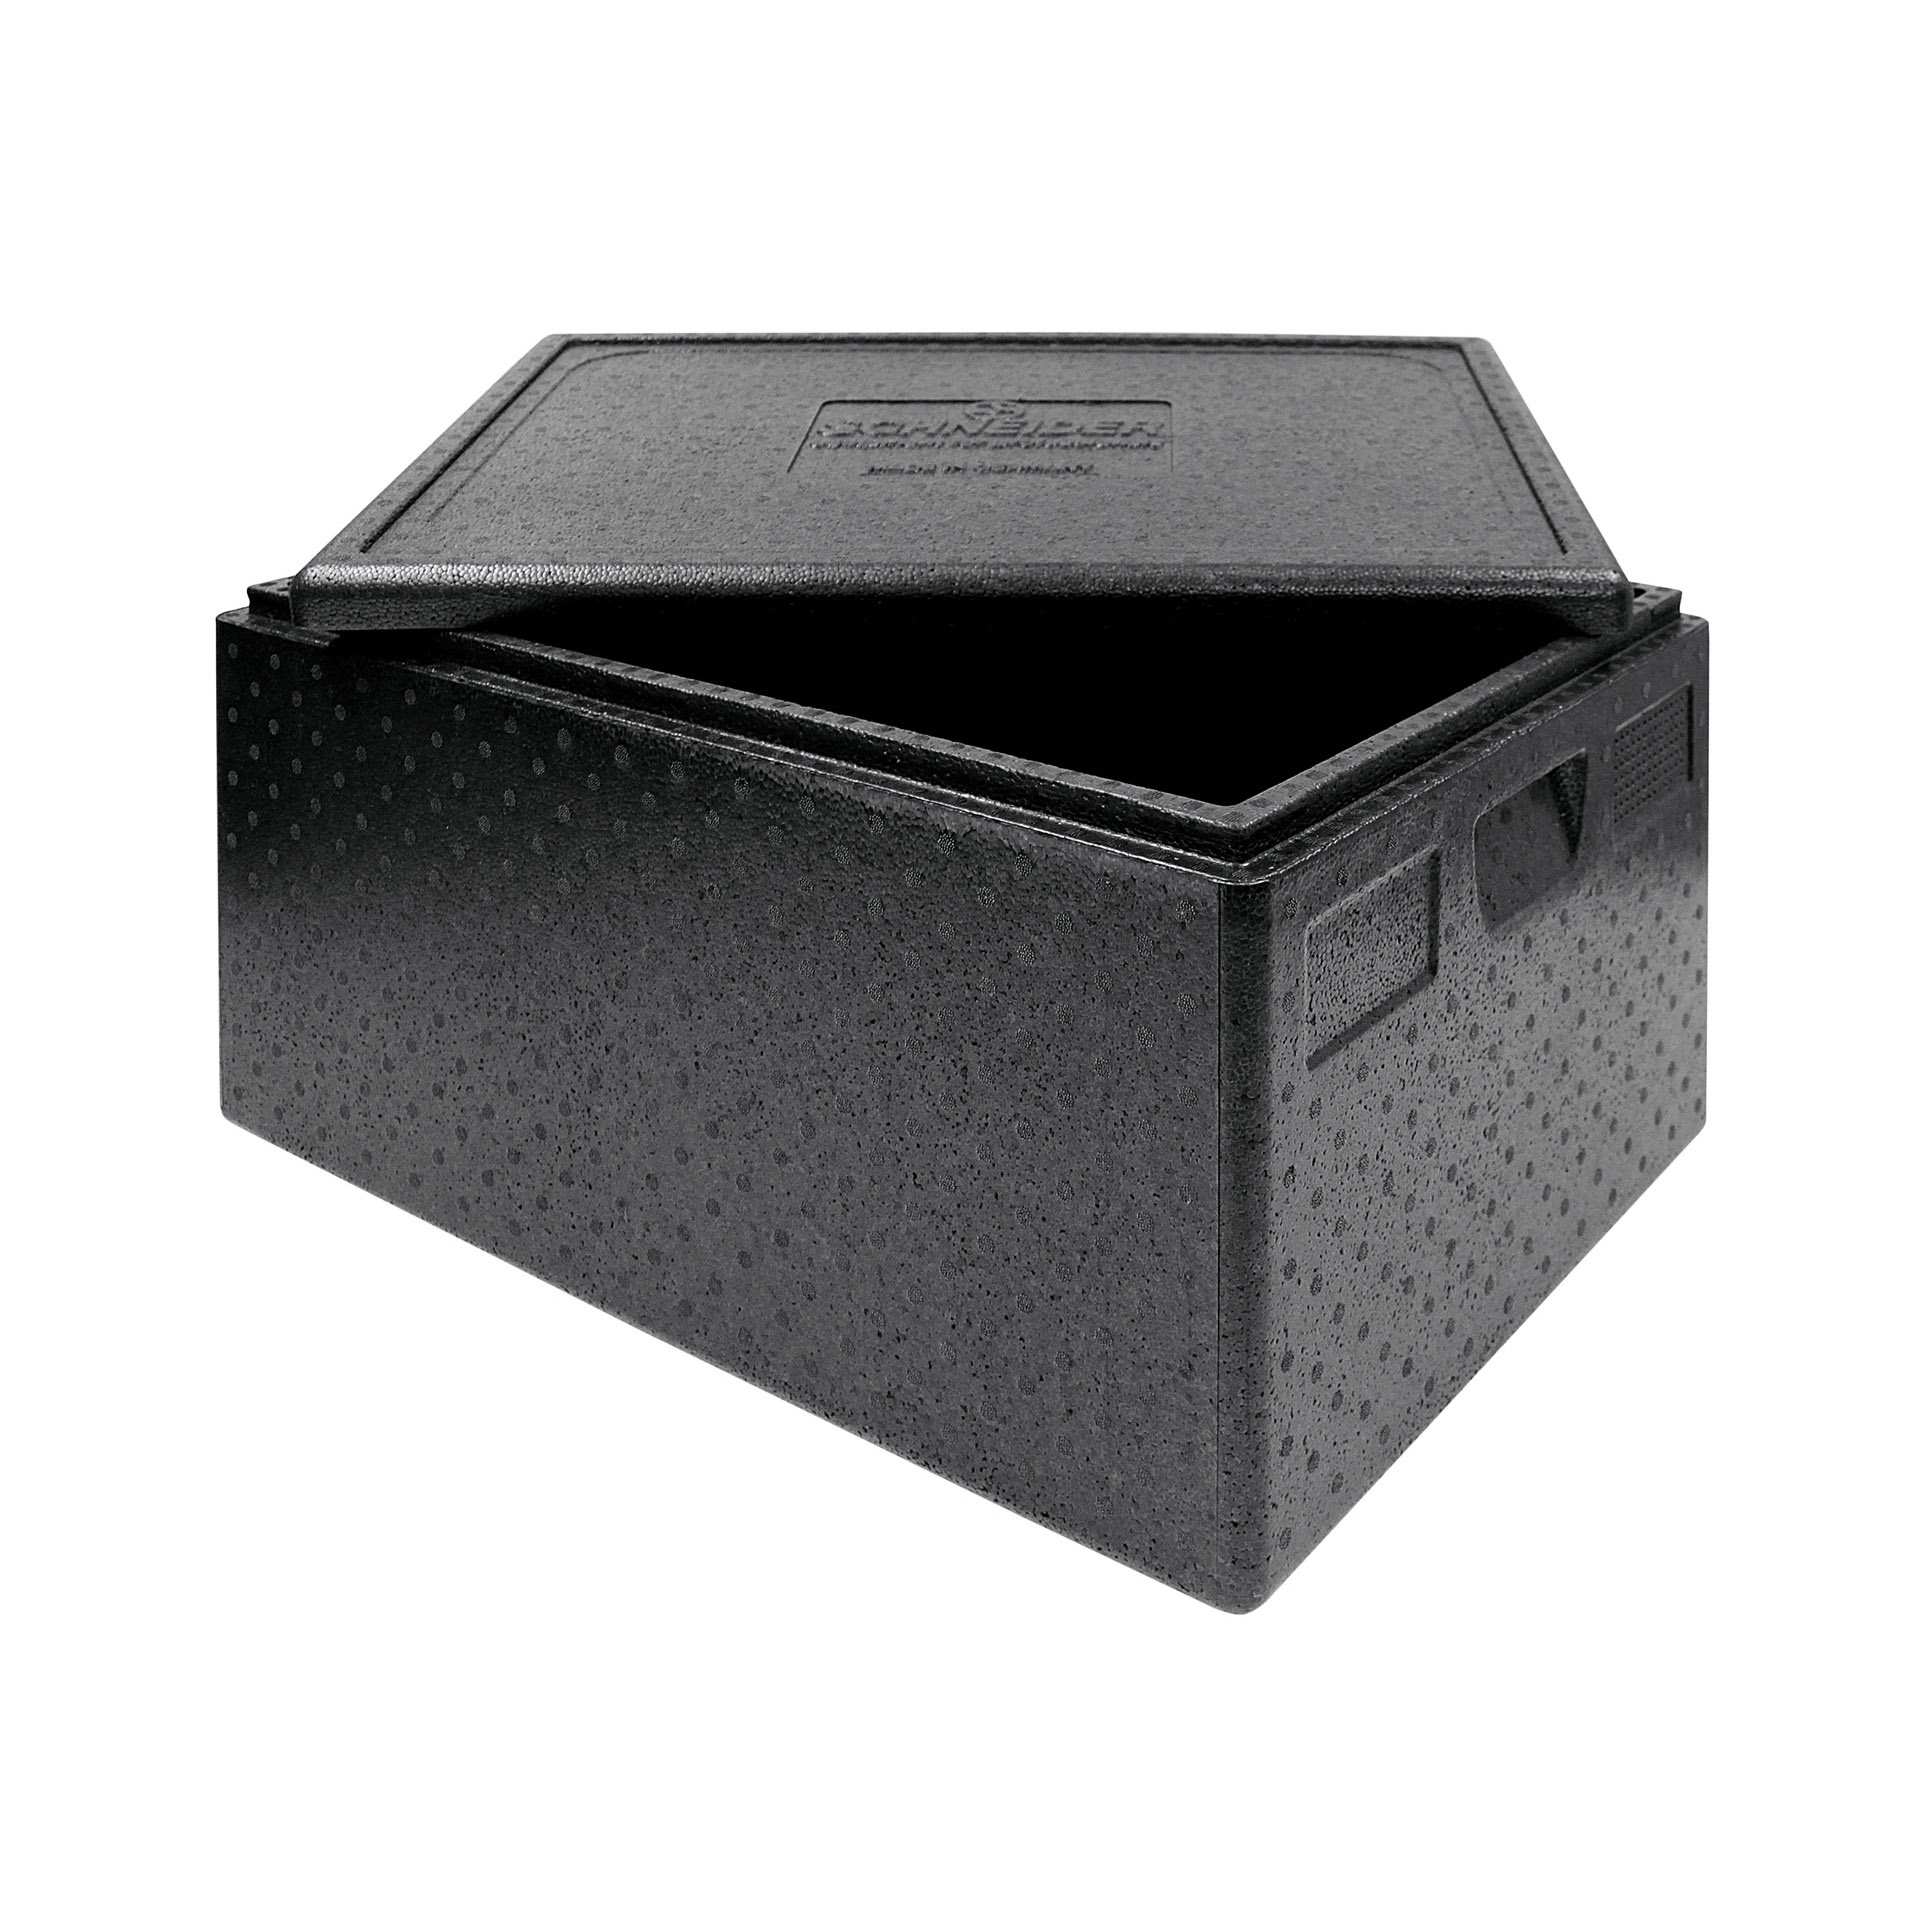 TOP-BOX - mit Deckel - Abm. 68,5 x 48,5 x 36,0 cm - Inhalt 80 l - EPP - 640360-C